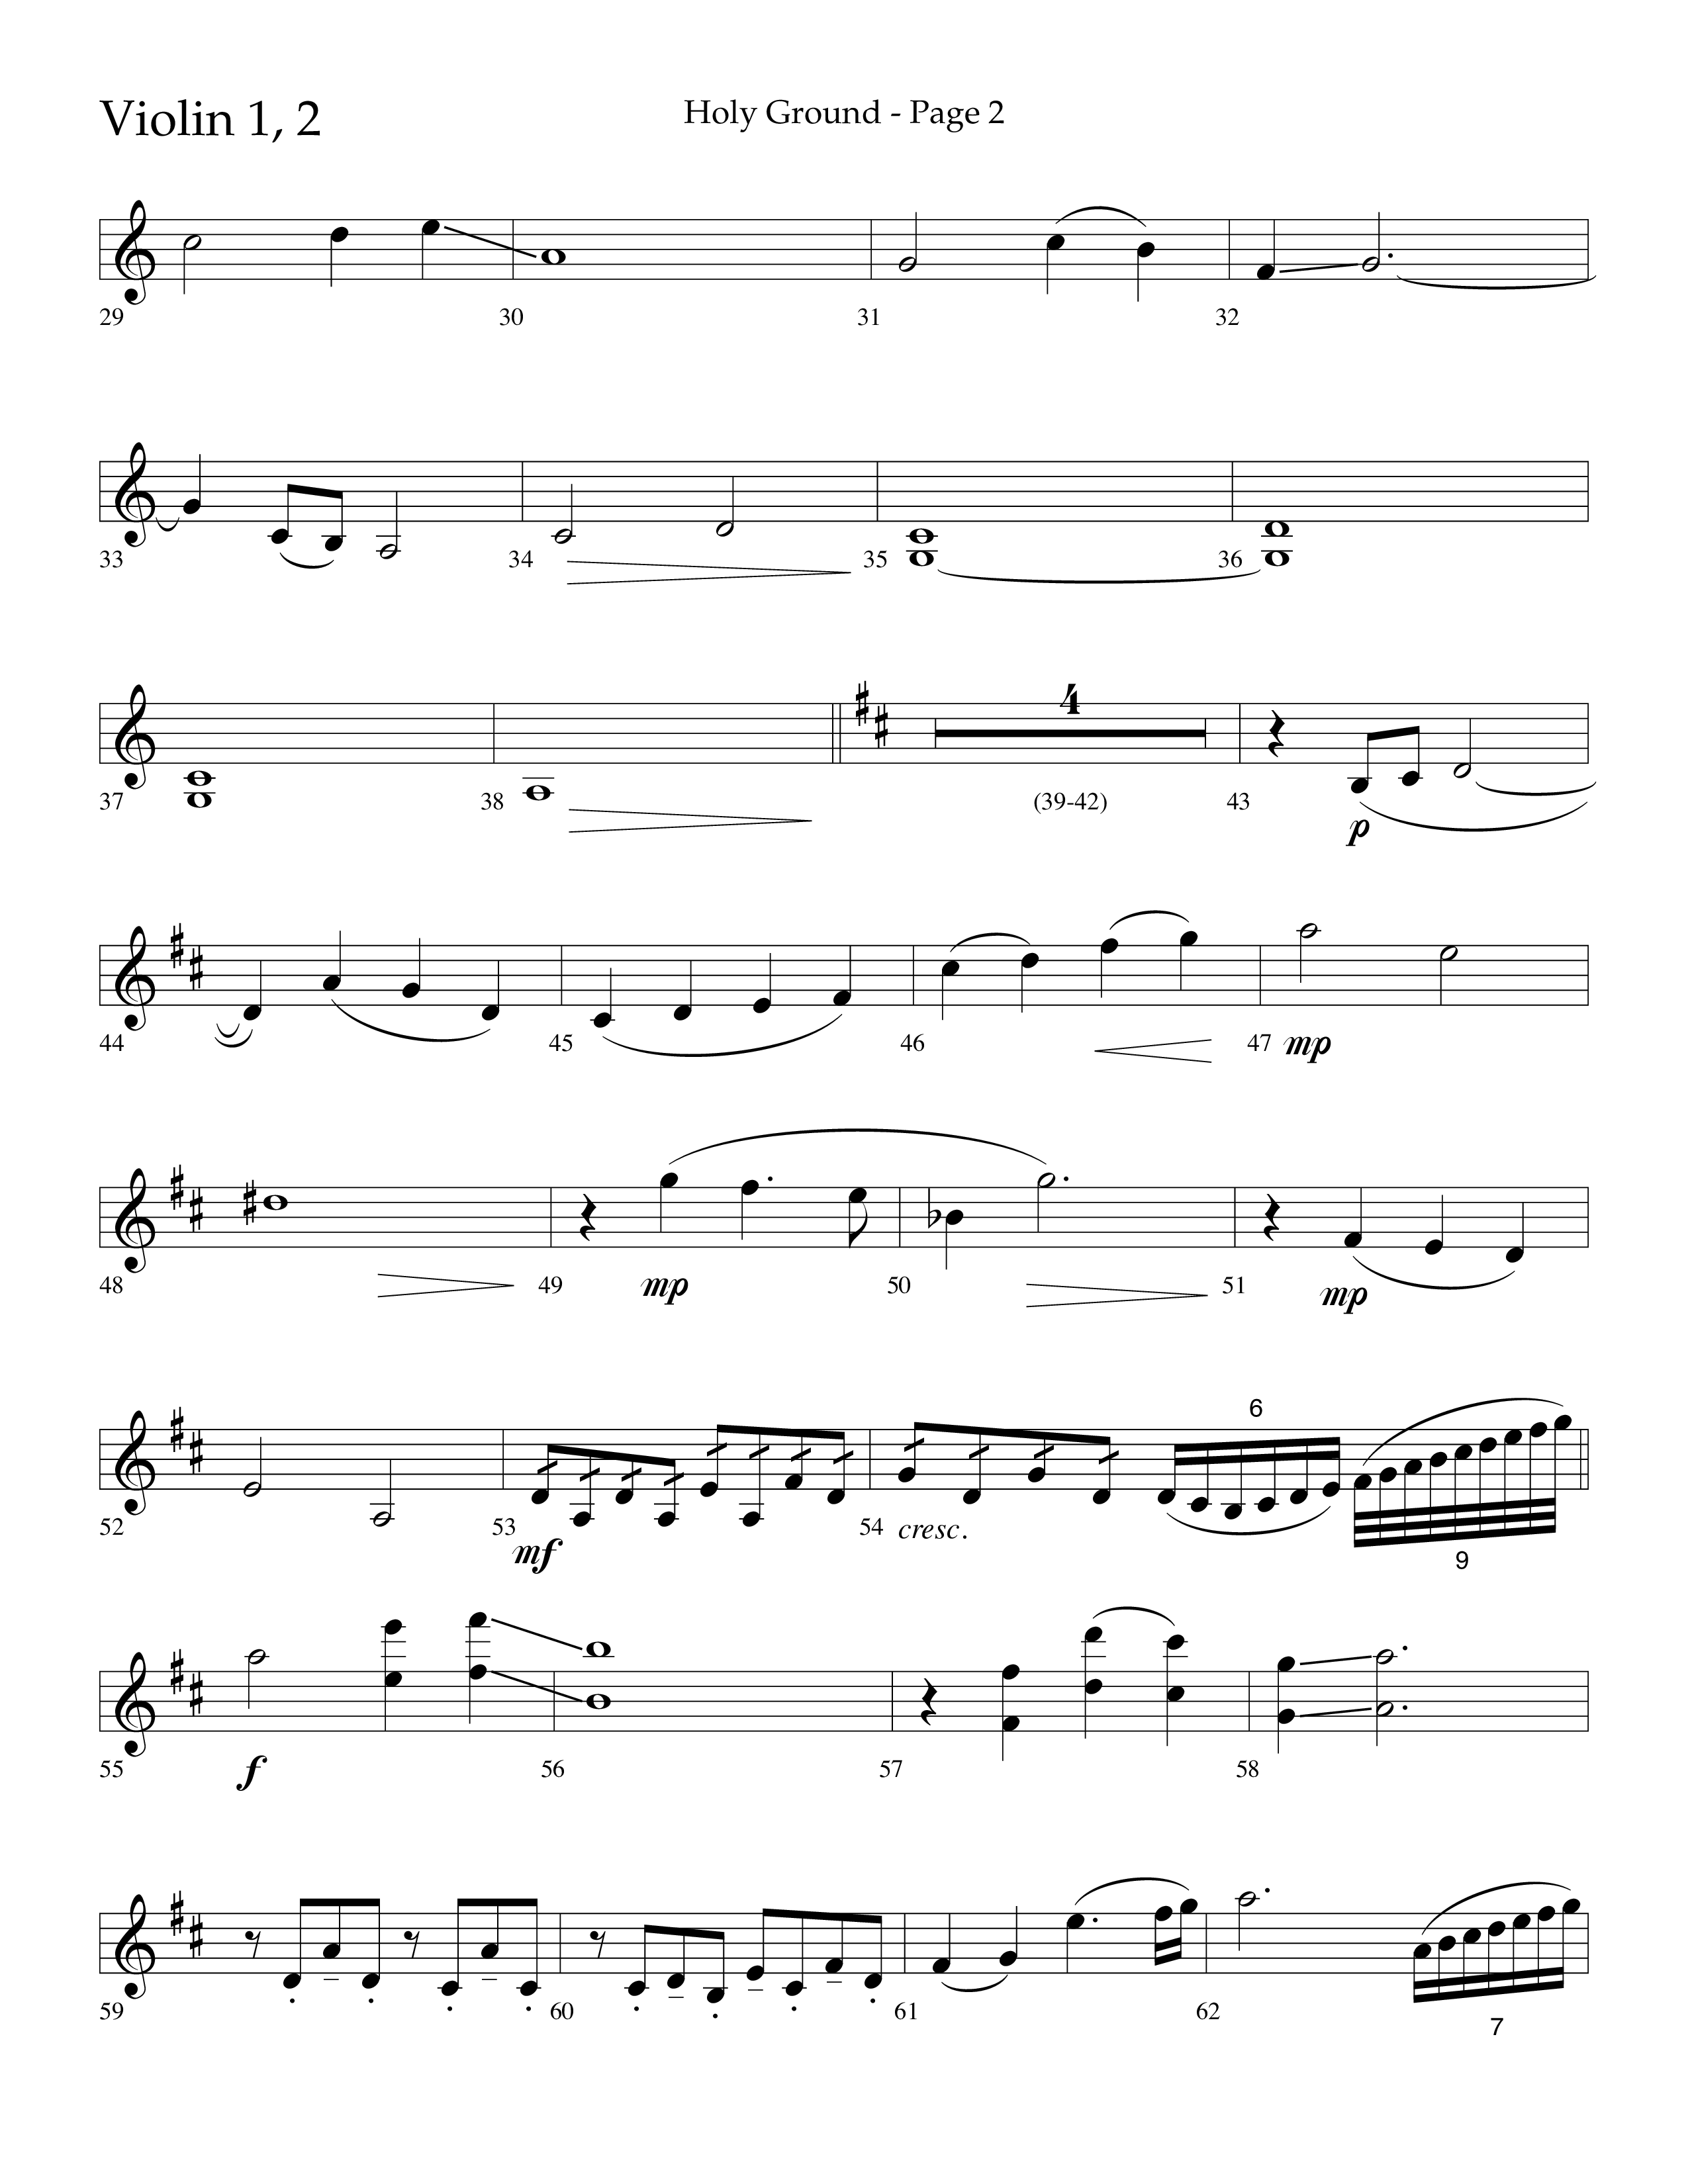 Holy Ground (Choral Anthem SATB) Violin 1/2 (Lifeway Choral / Arr. Bradley Knight)